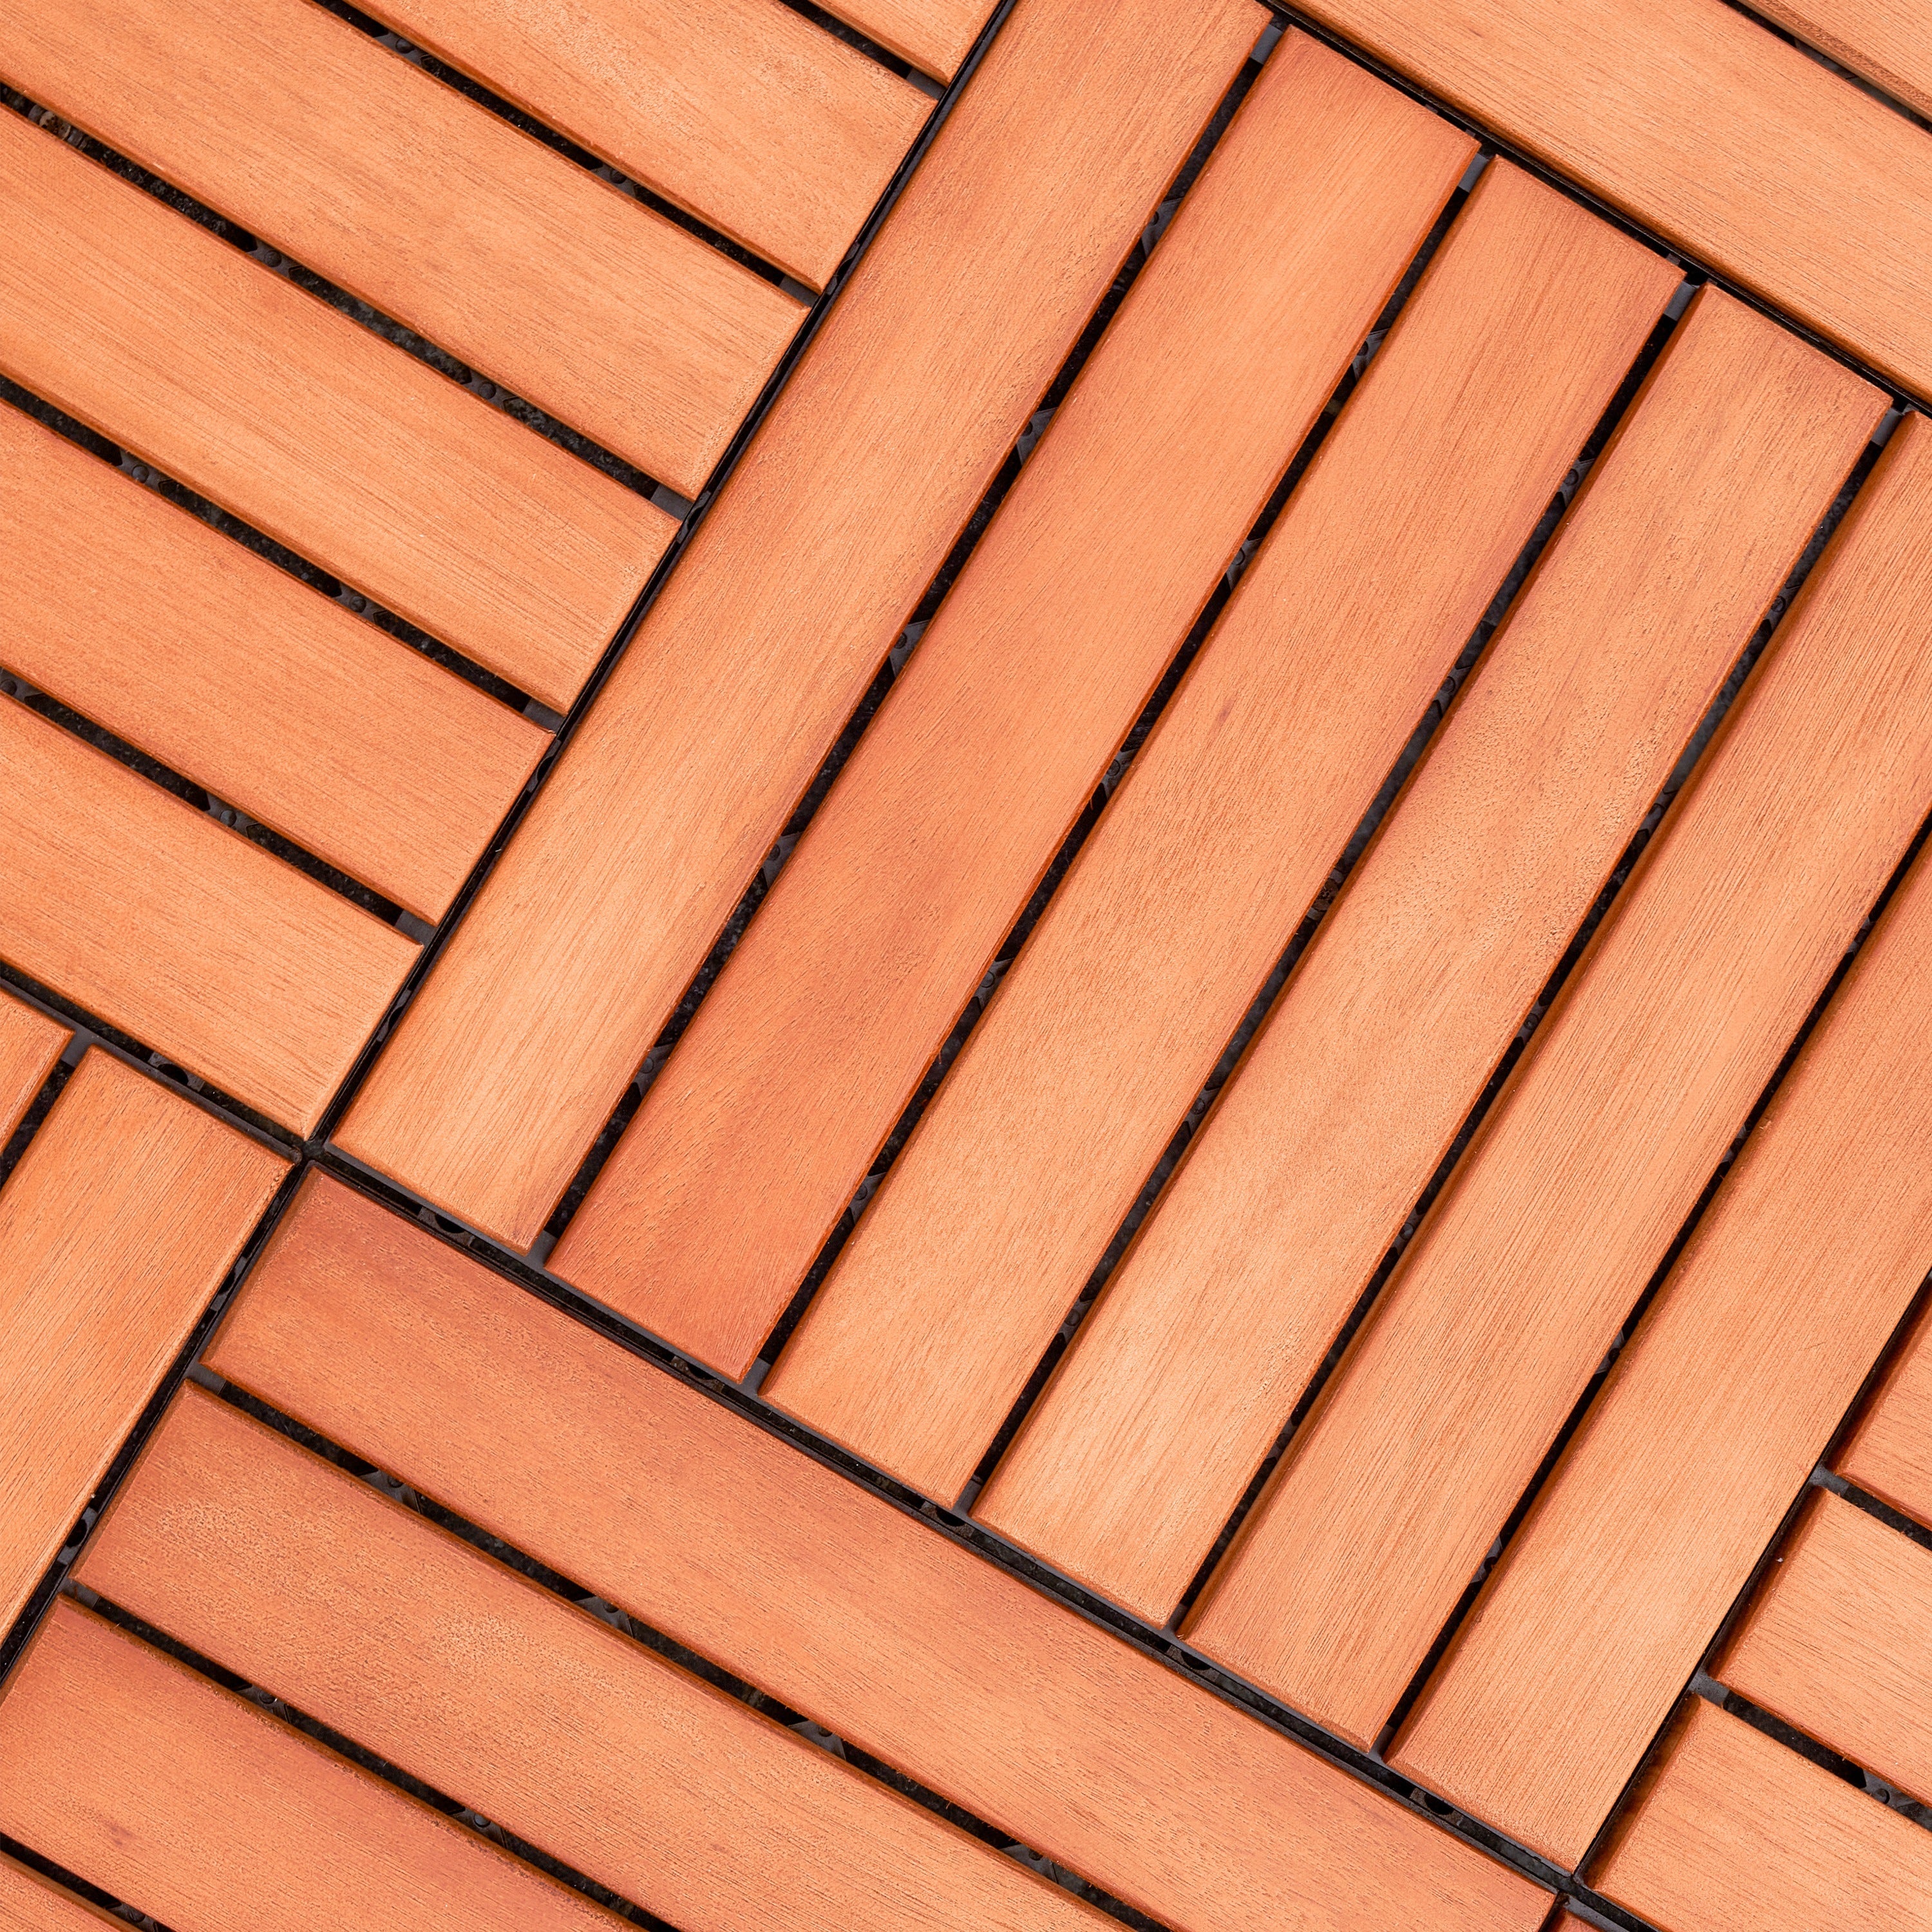 Kaia 6-Slat Reddish Brown Wood Interlocking Deck Tile (Set of 10 Tiles)